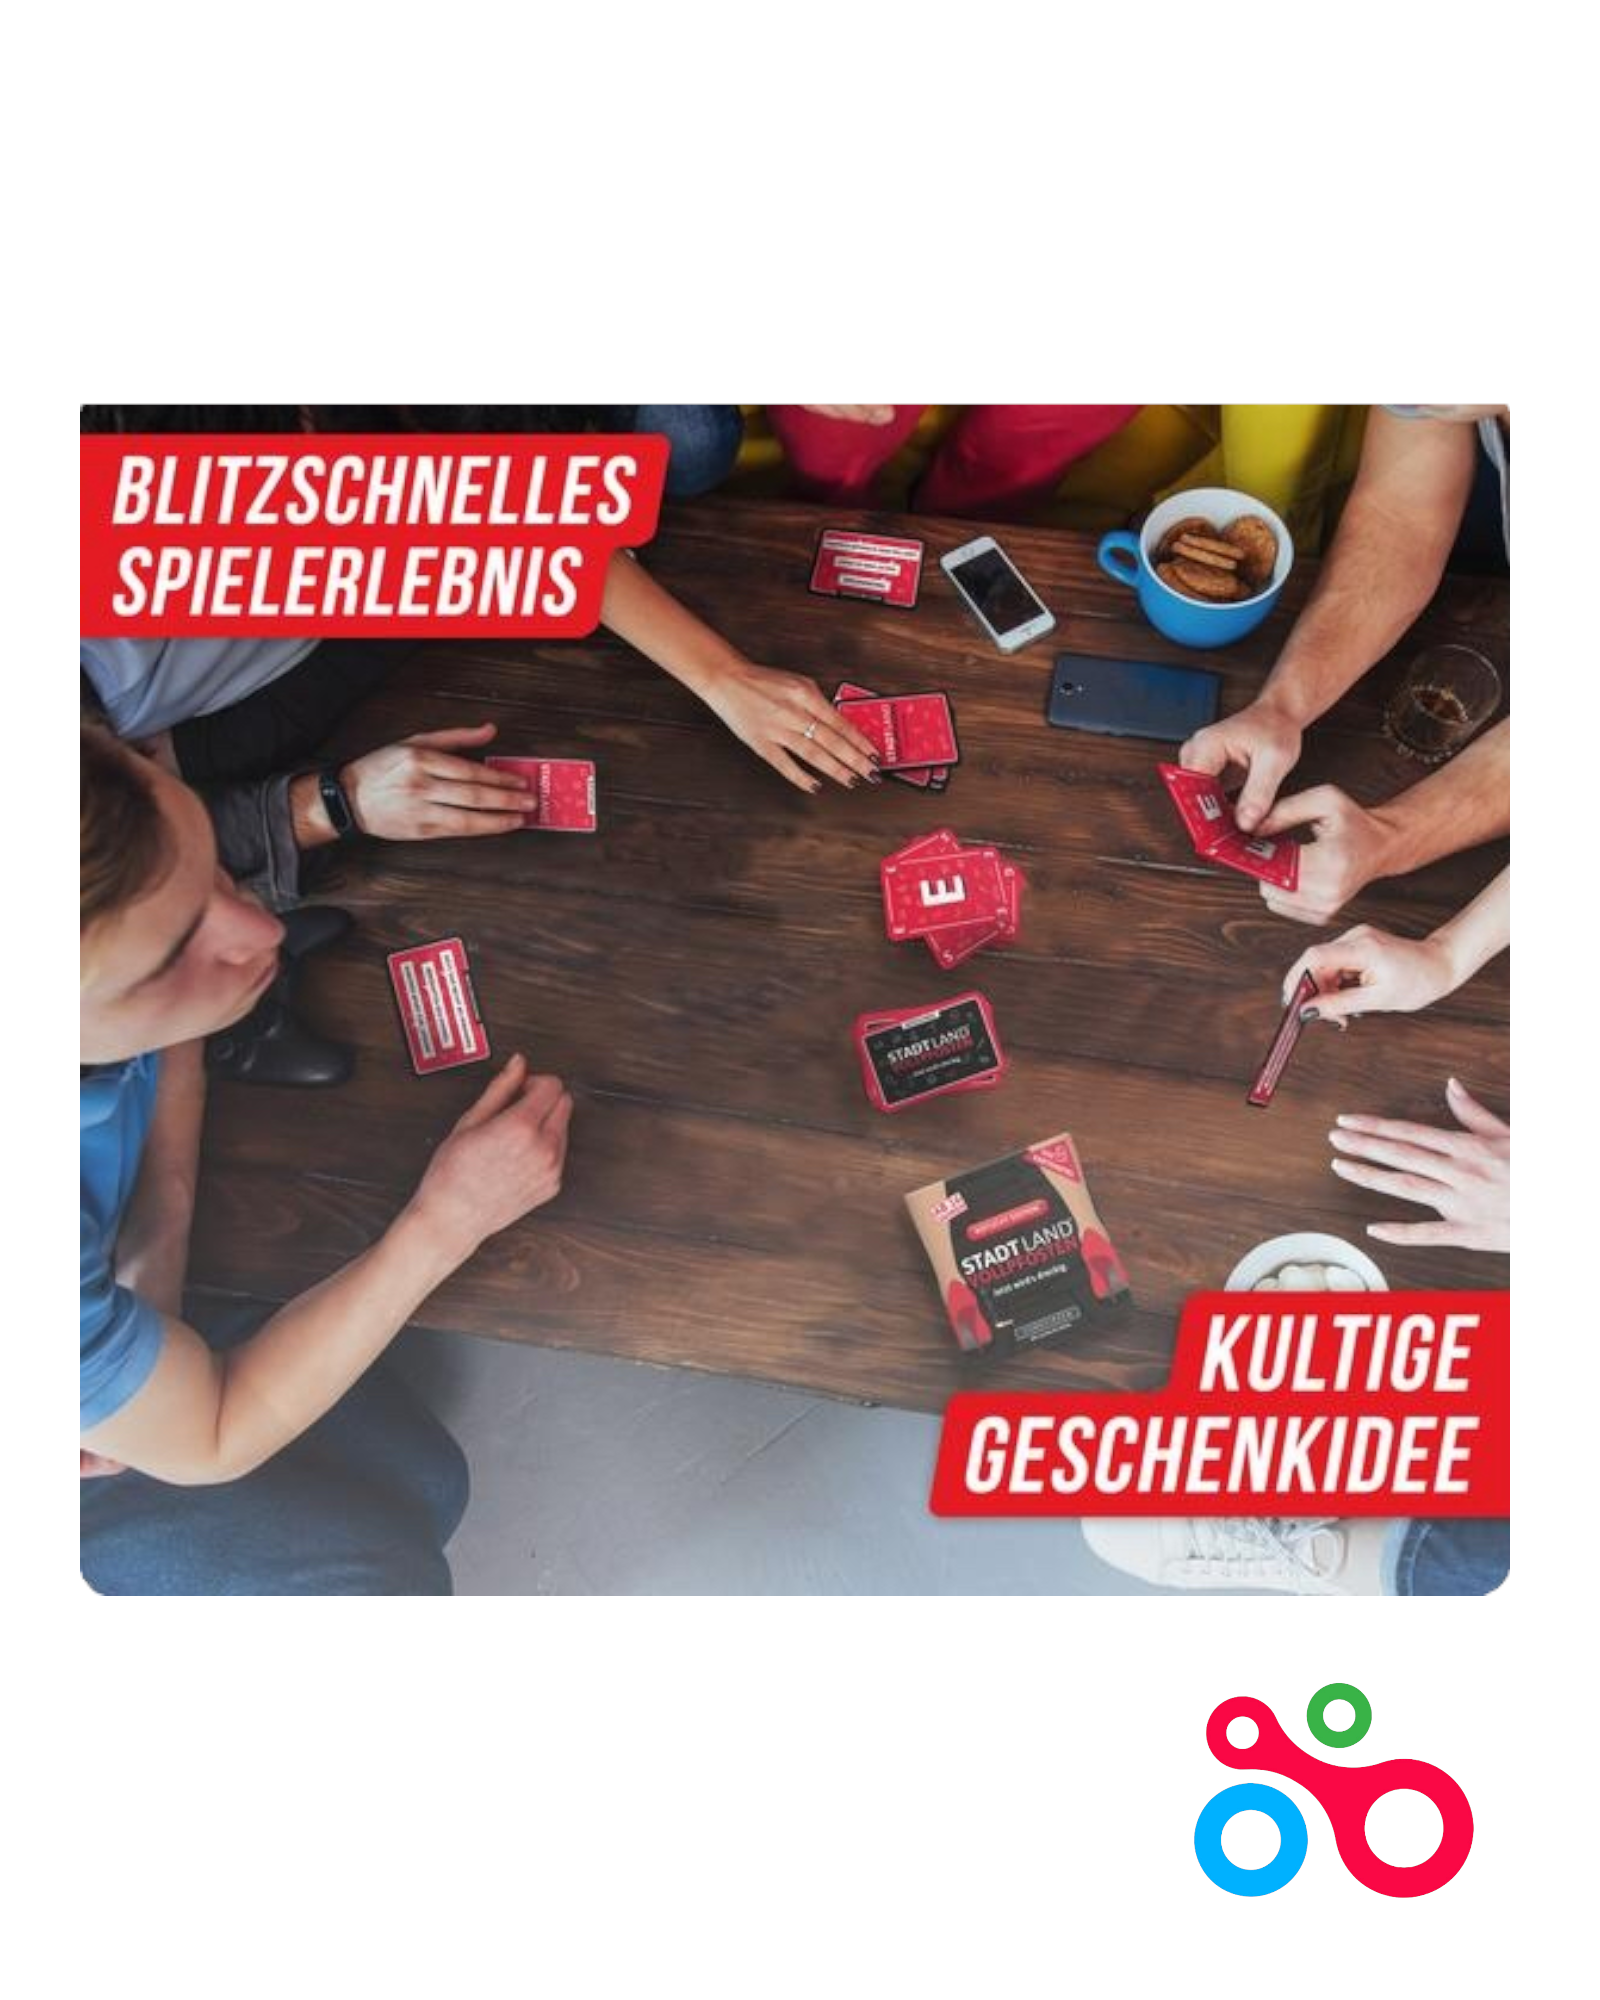 Stadt Land Vollpfosten® - Das Kartenspiel - Rotlicht Edition Vanellas Spielewelt